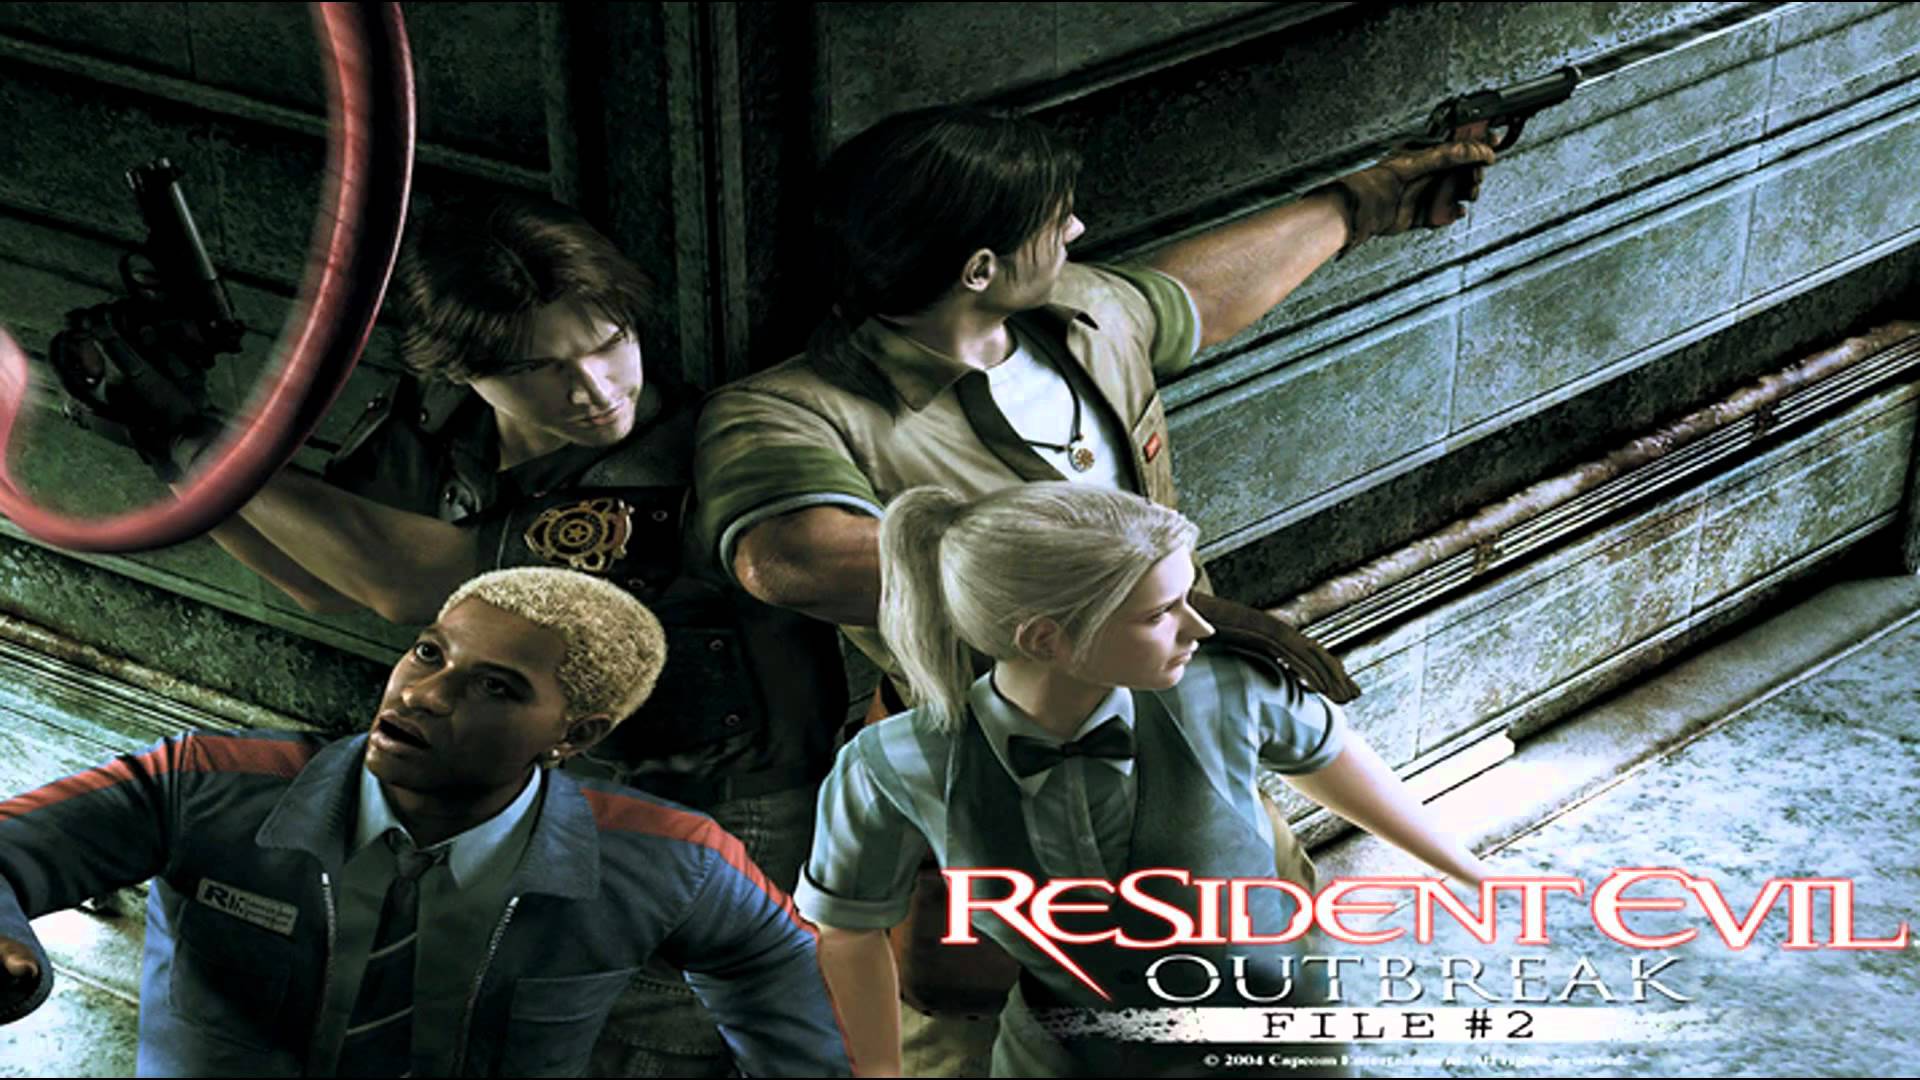 Resident Evil Outbreak: File #2 #17